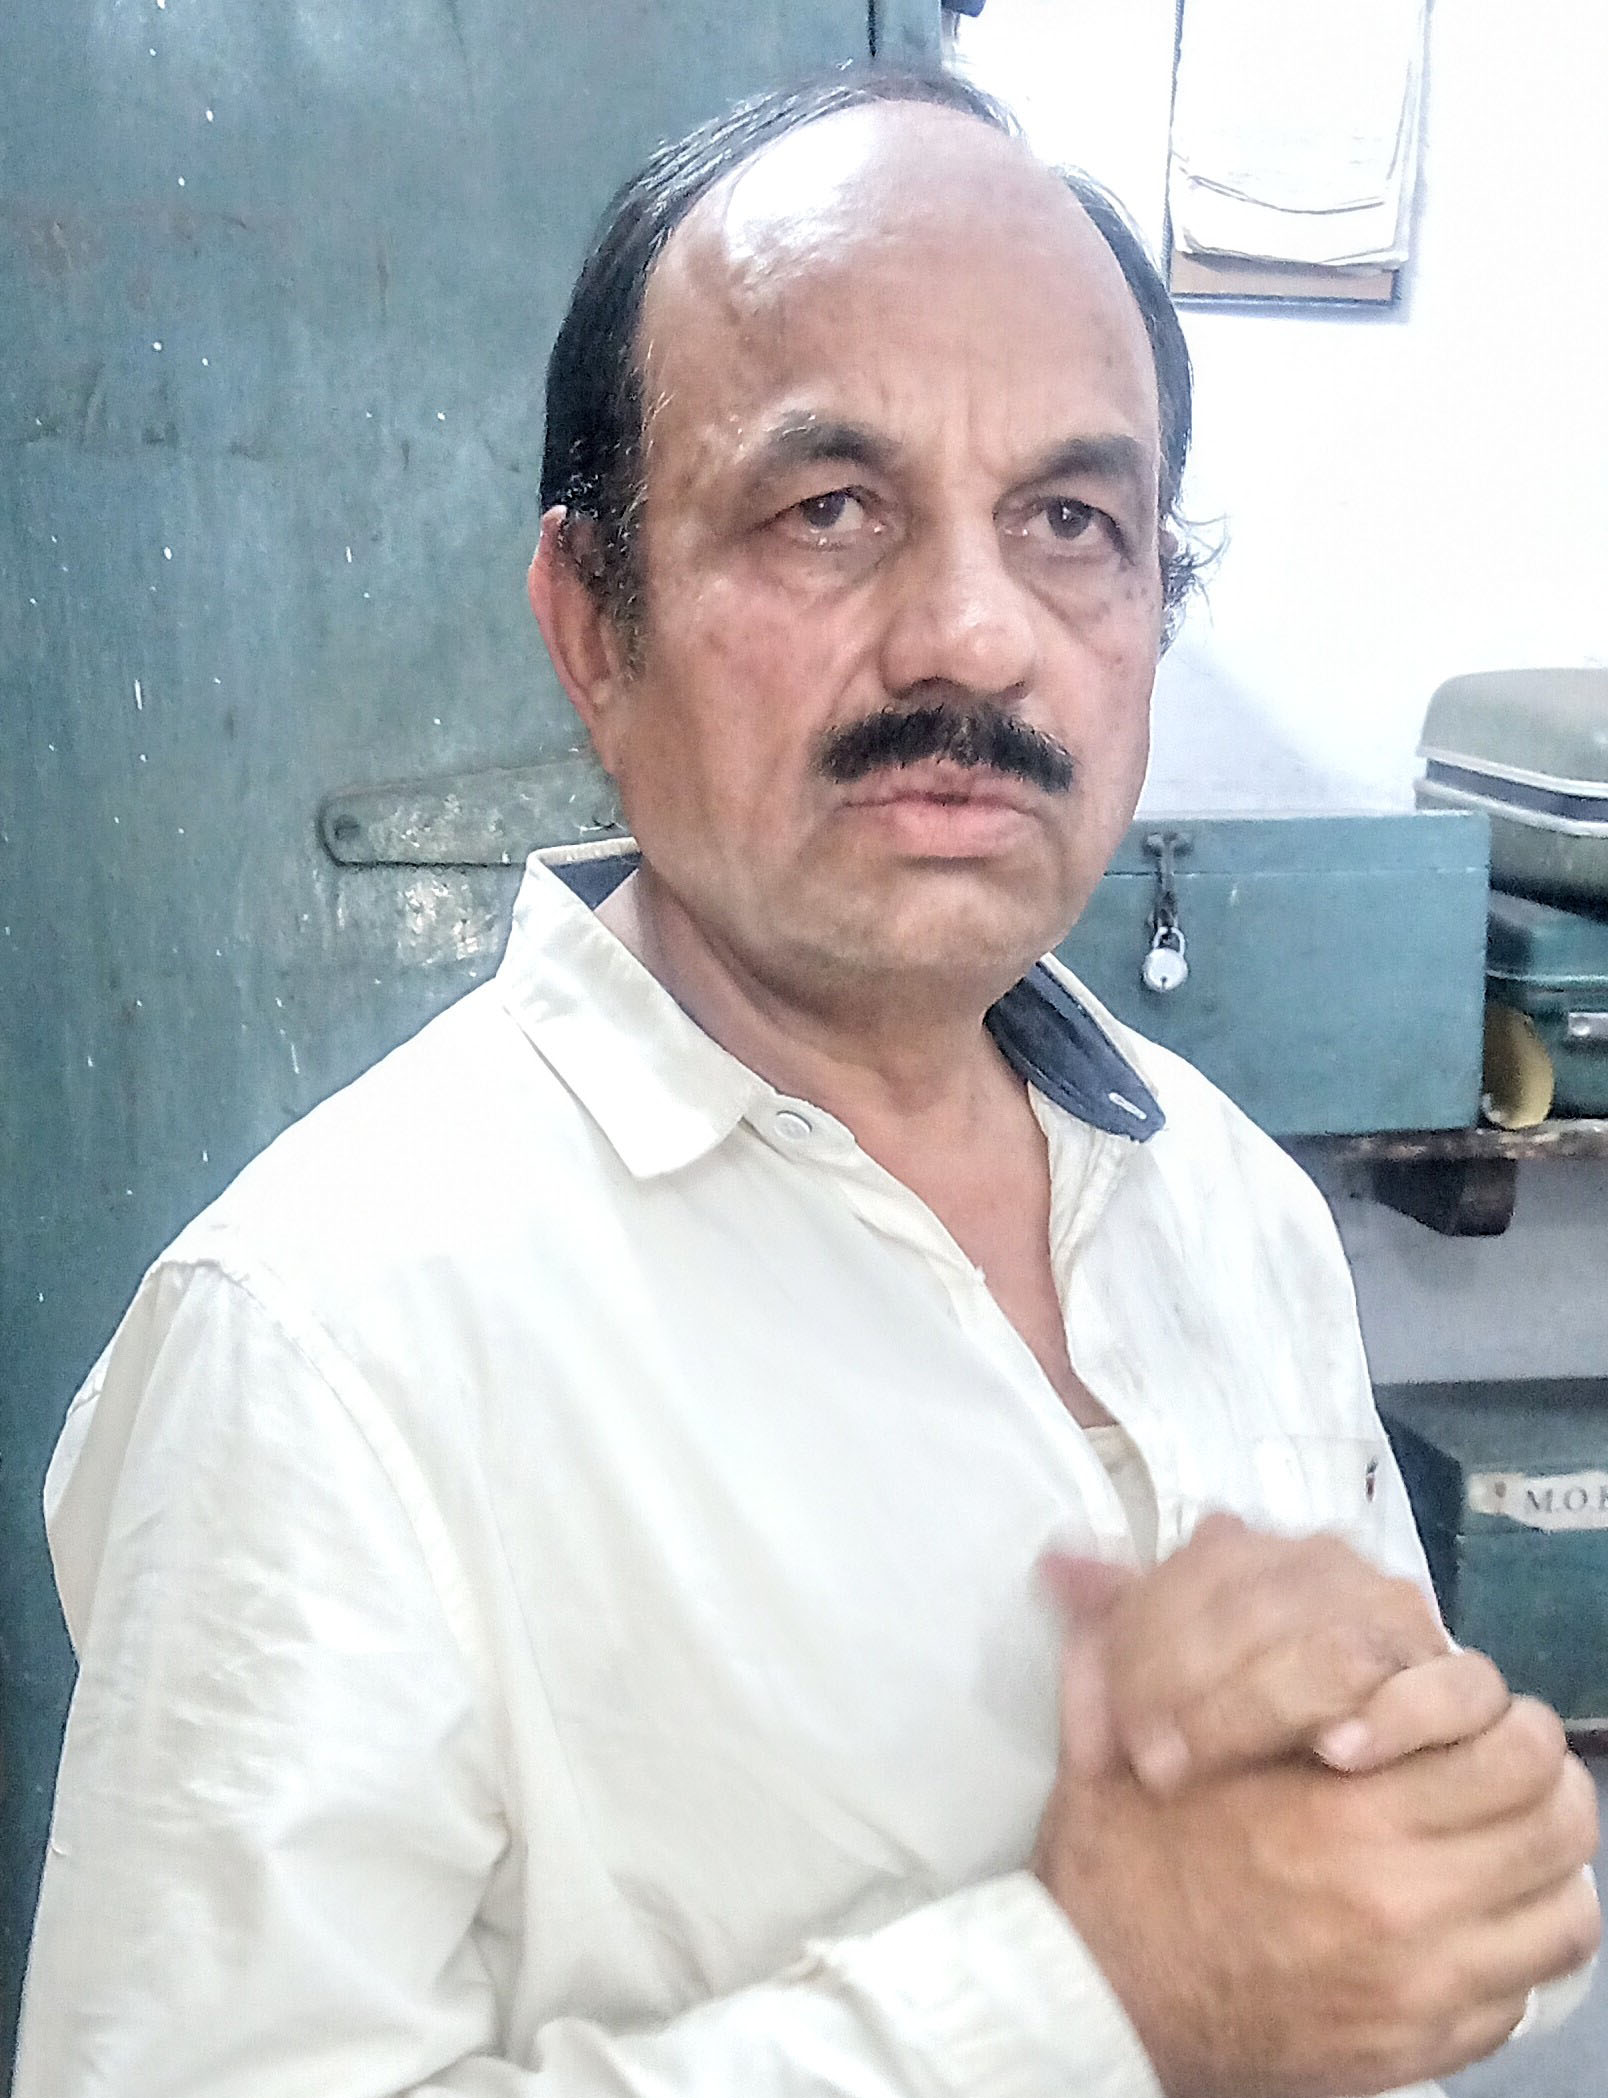 जबलपुर : महिला सफाईकर्मी ने सीनियर सेक्शन इंजीनियर को पीटा